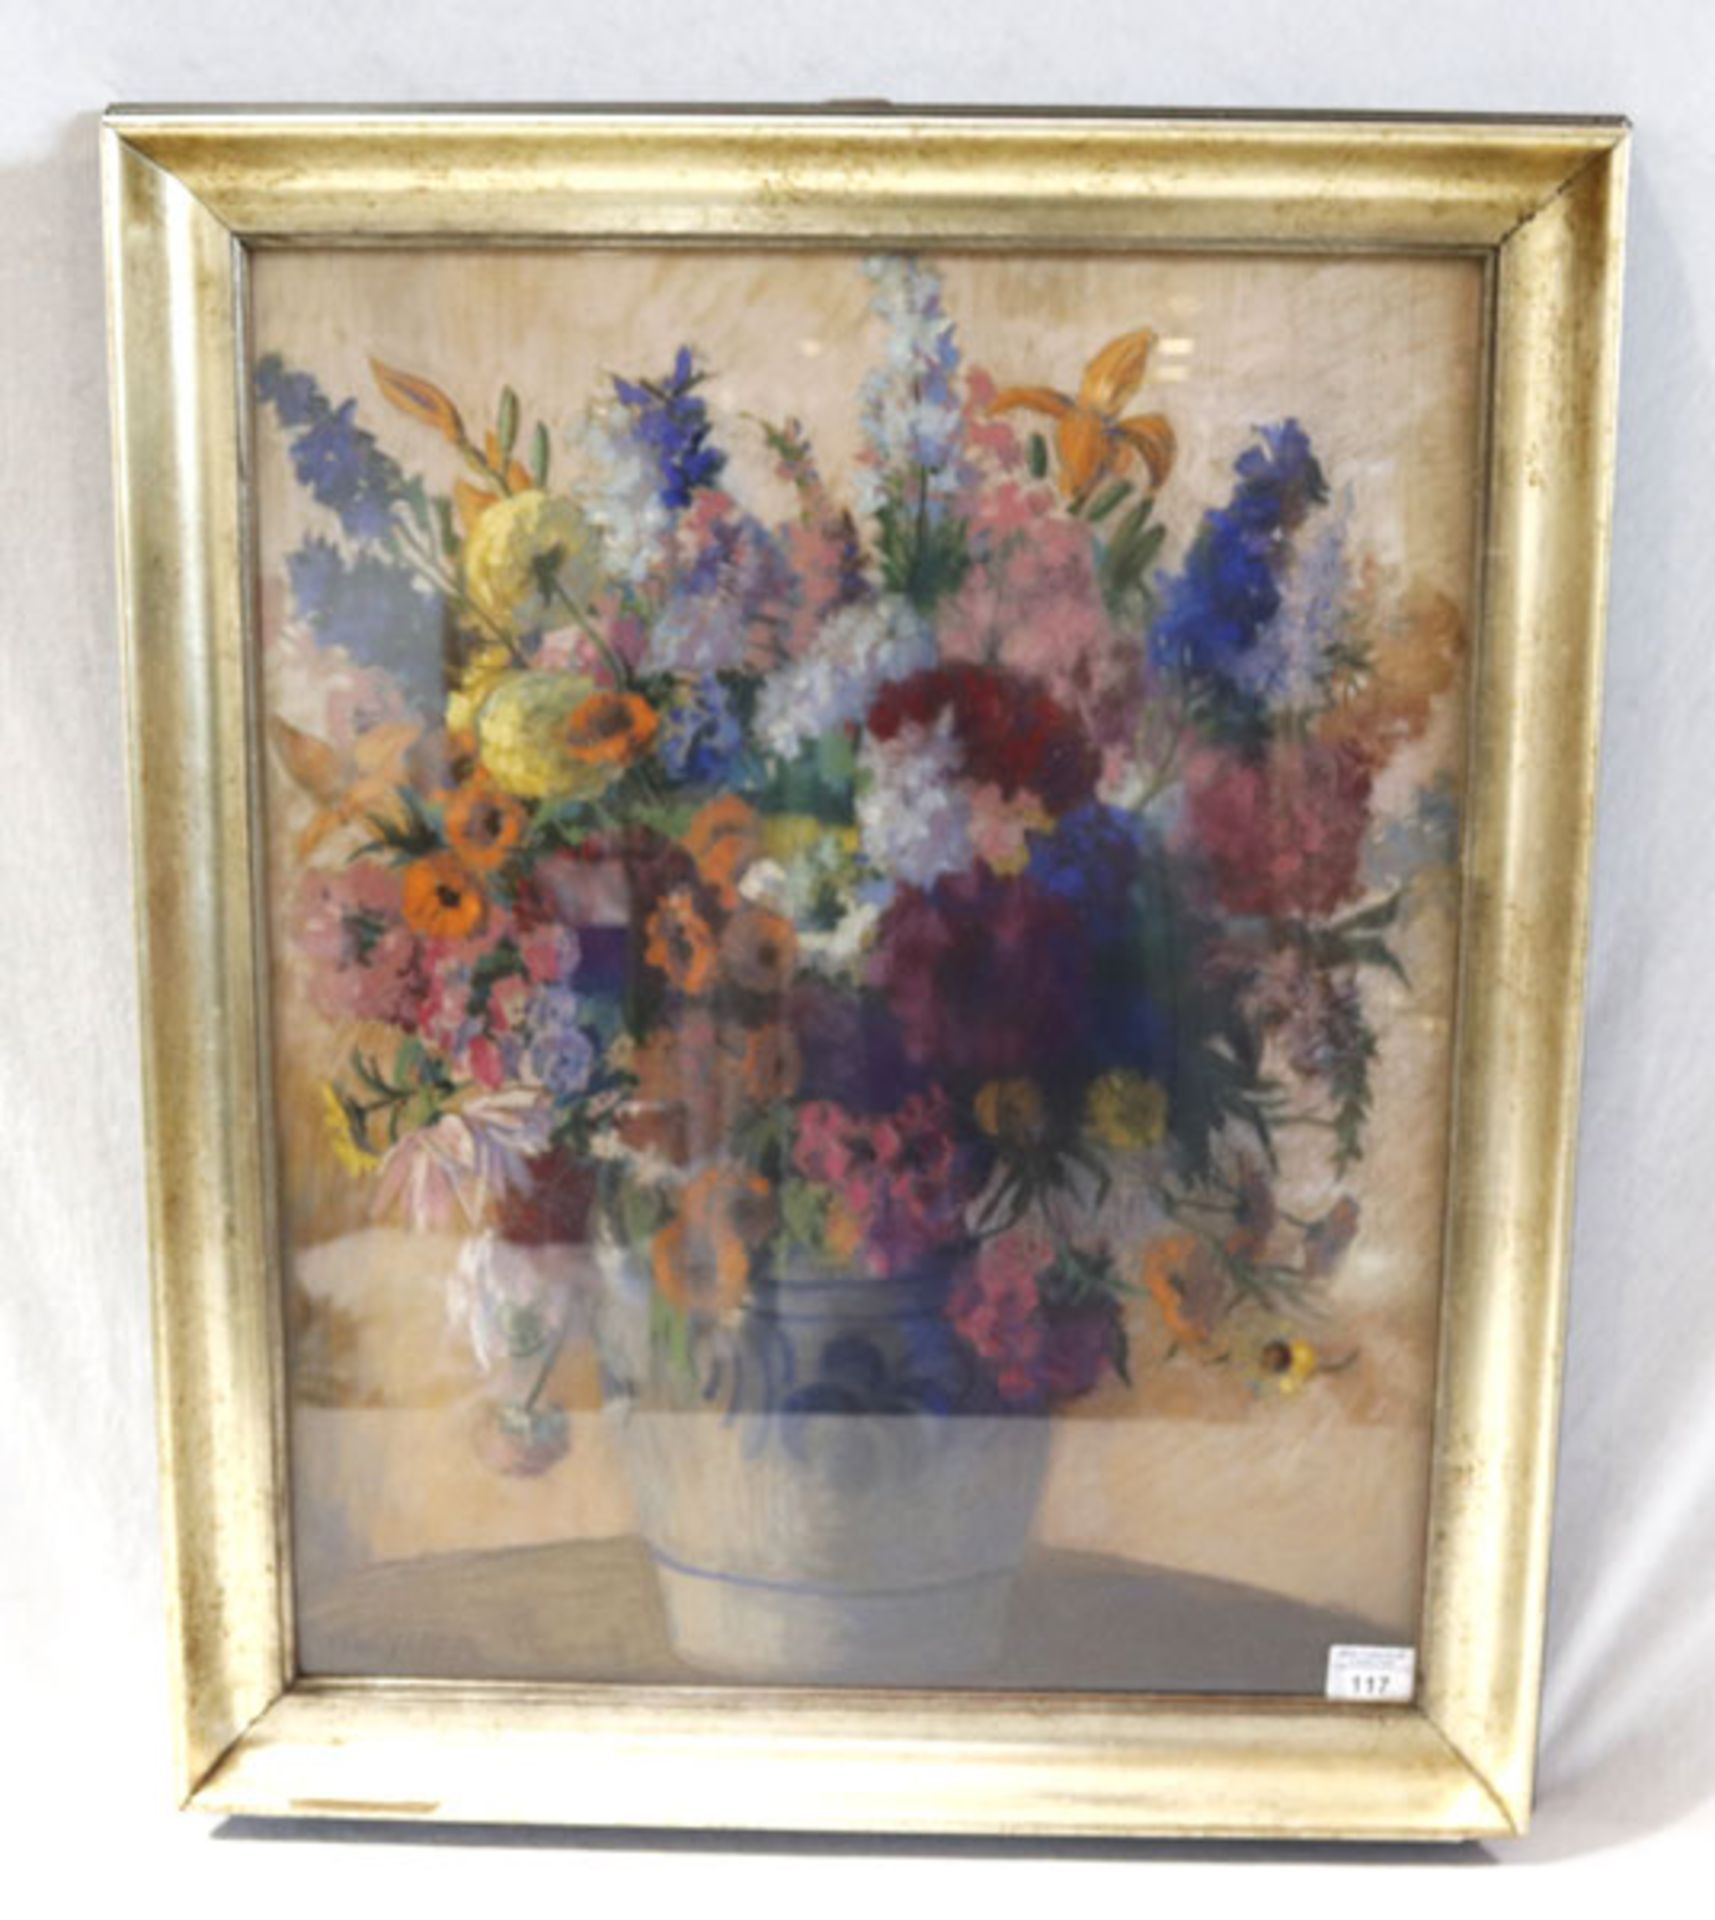 Gemälde Pastell 'Blumenstillleben in Vase', signiert B. Weyerer, 1926, unter Glas gerahmt, Rahmen